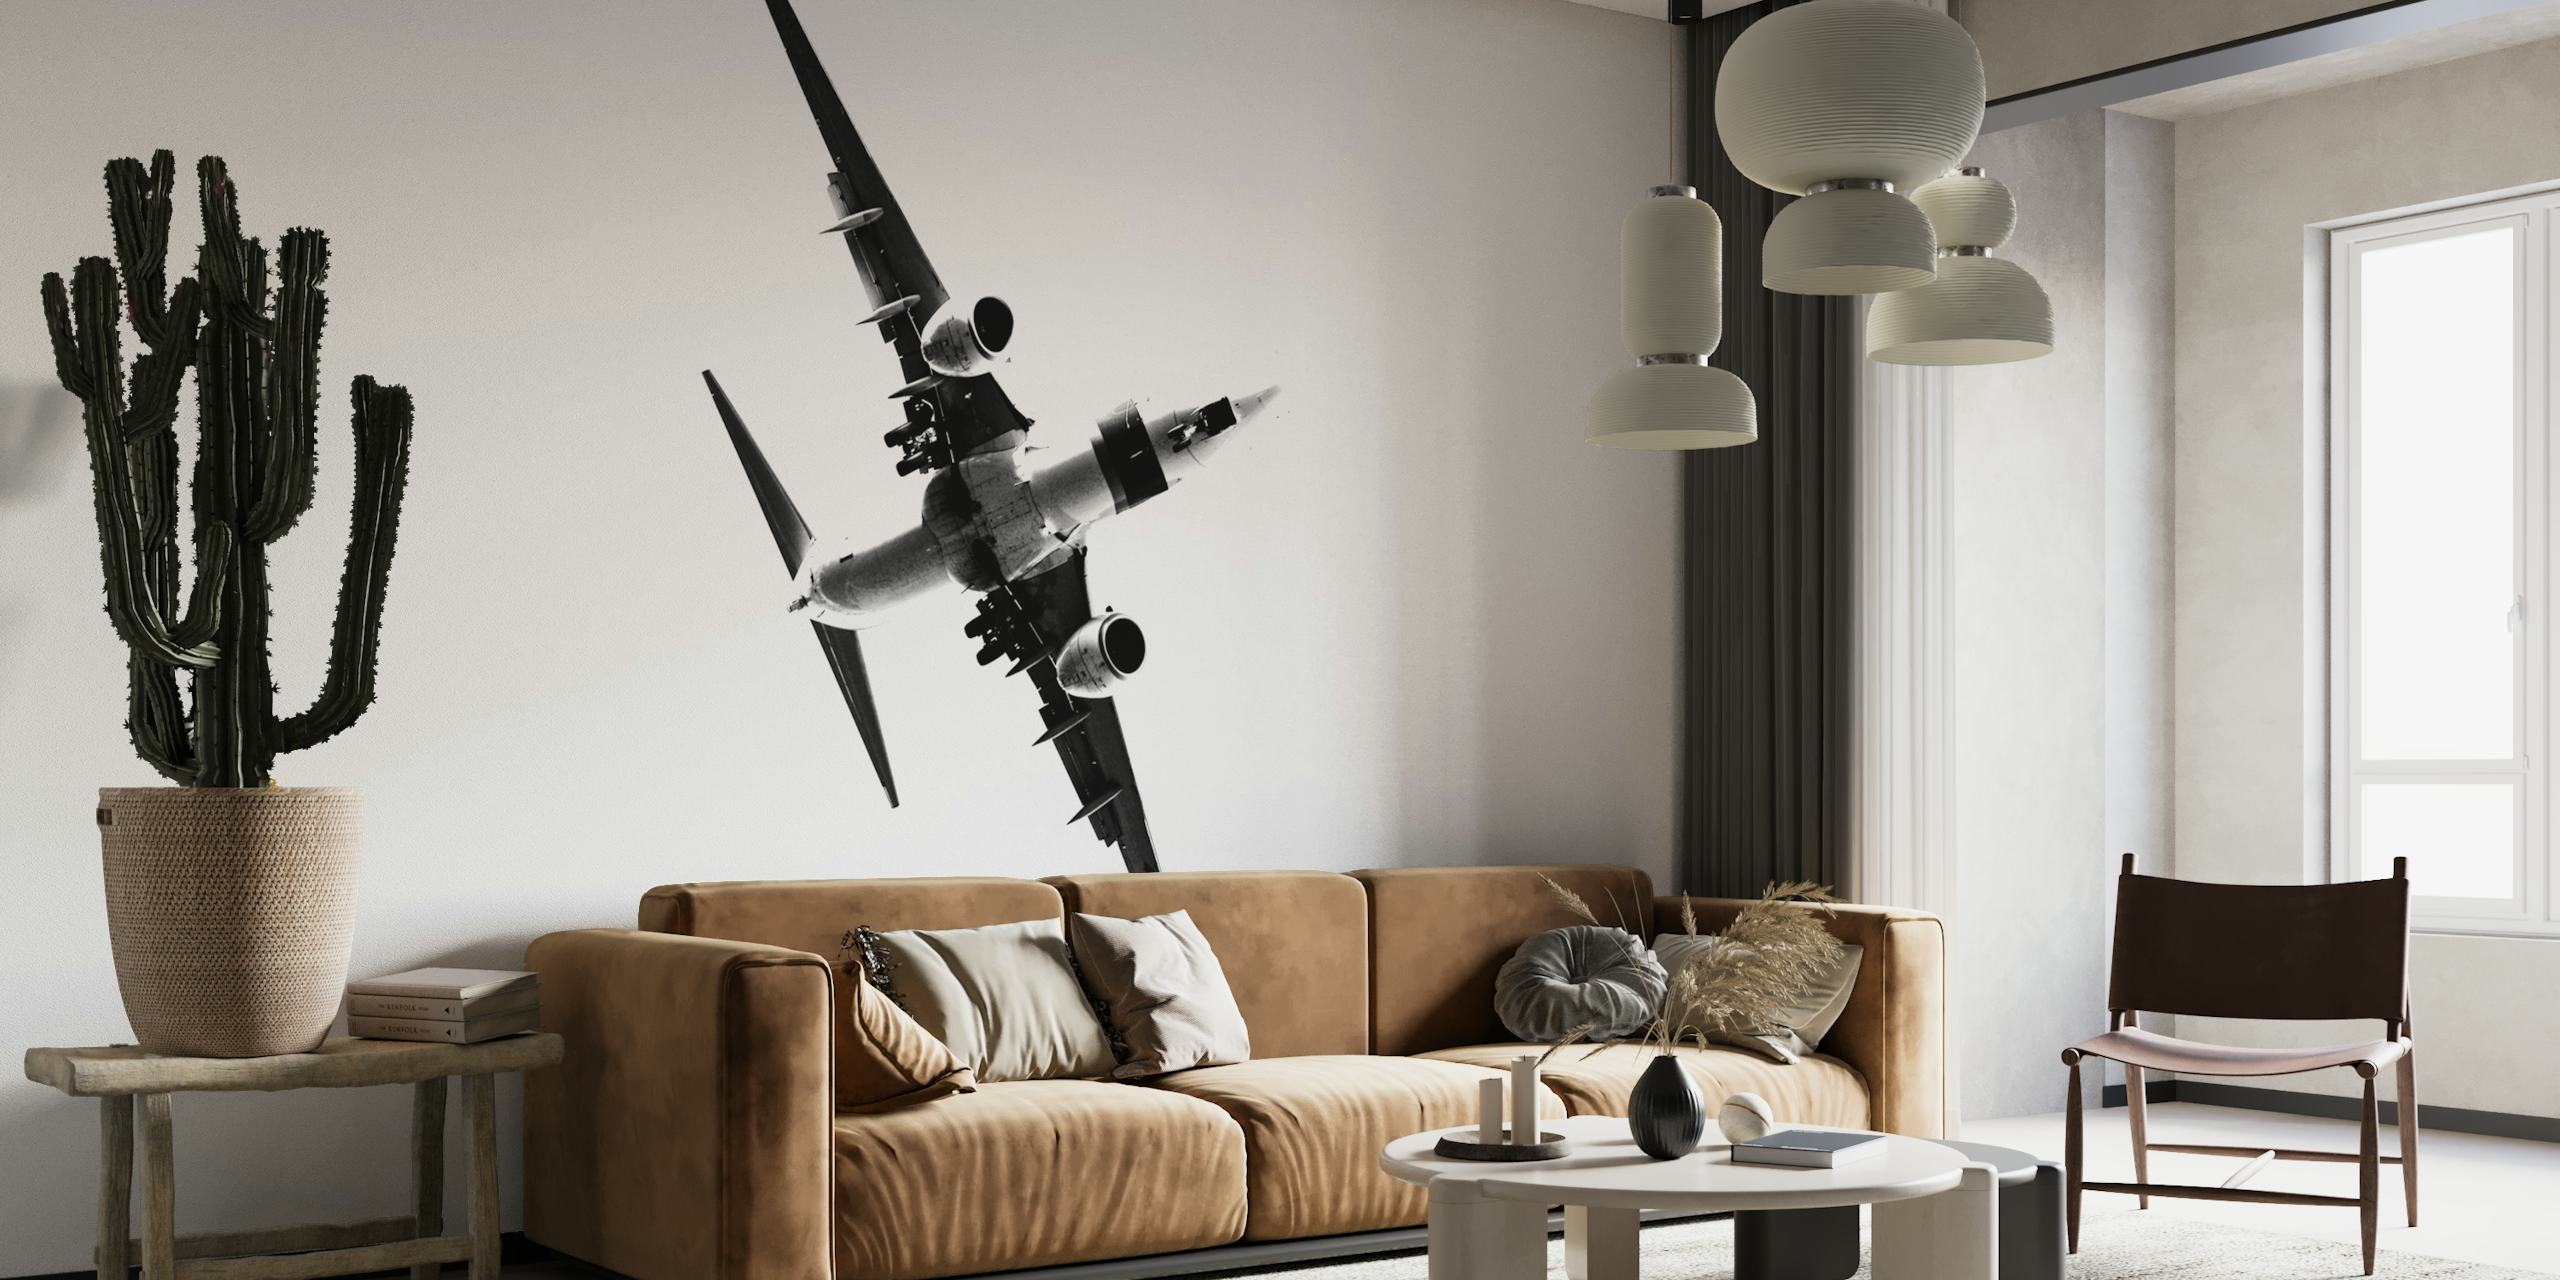 Mural en blanco y negro de un avión estilizado ascendiendo que simboliza el progreso y la ambición.